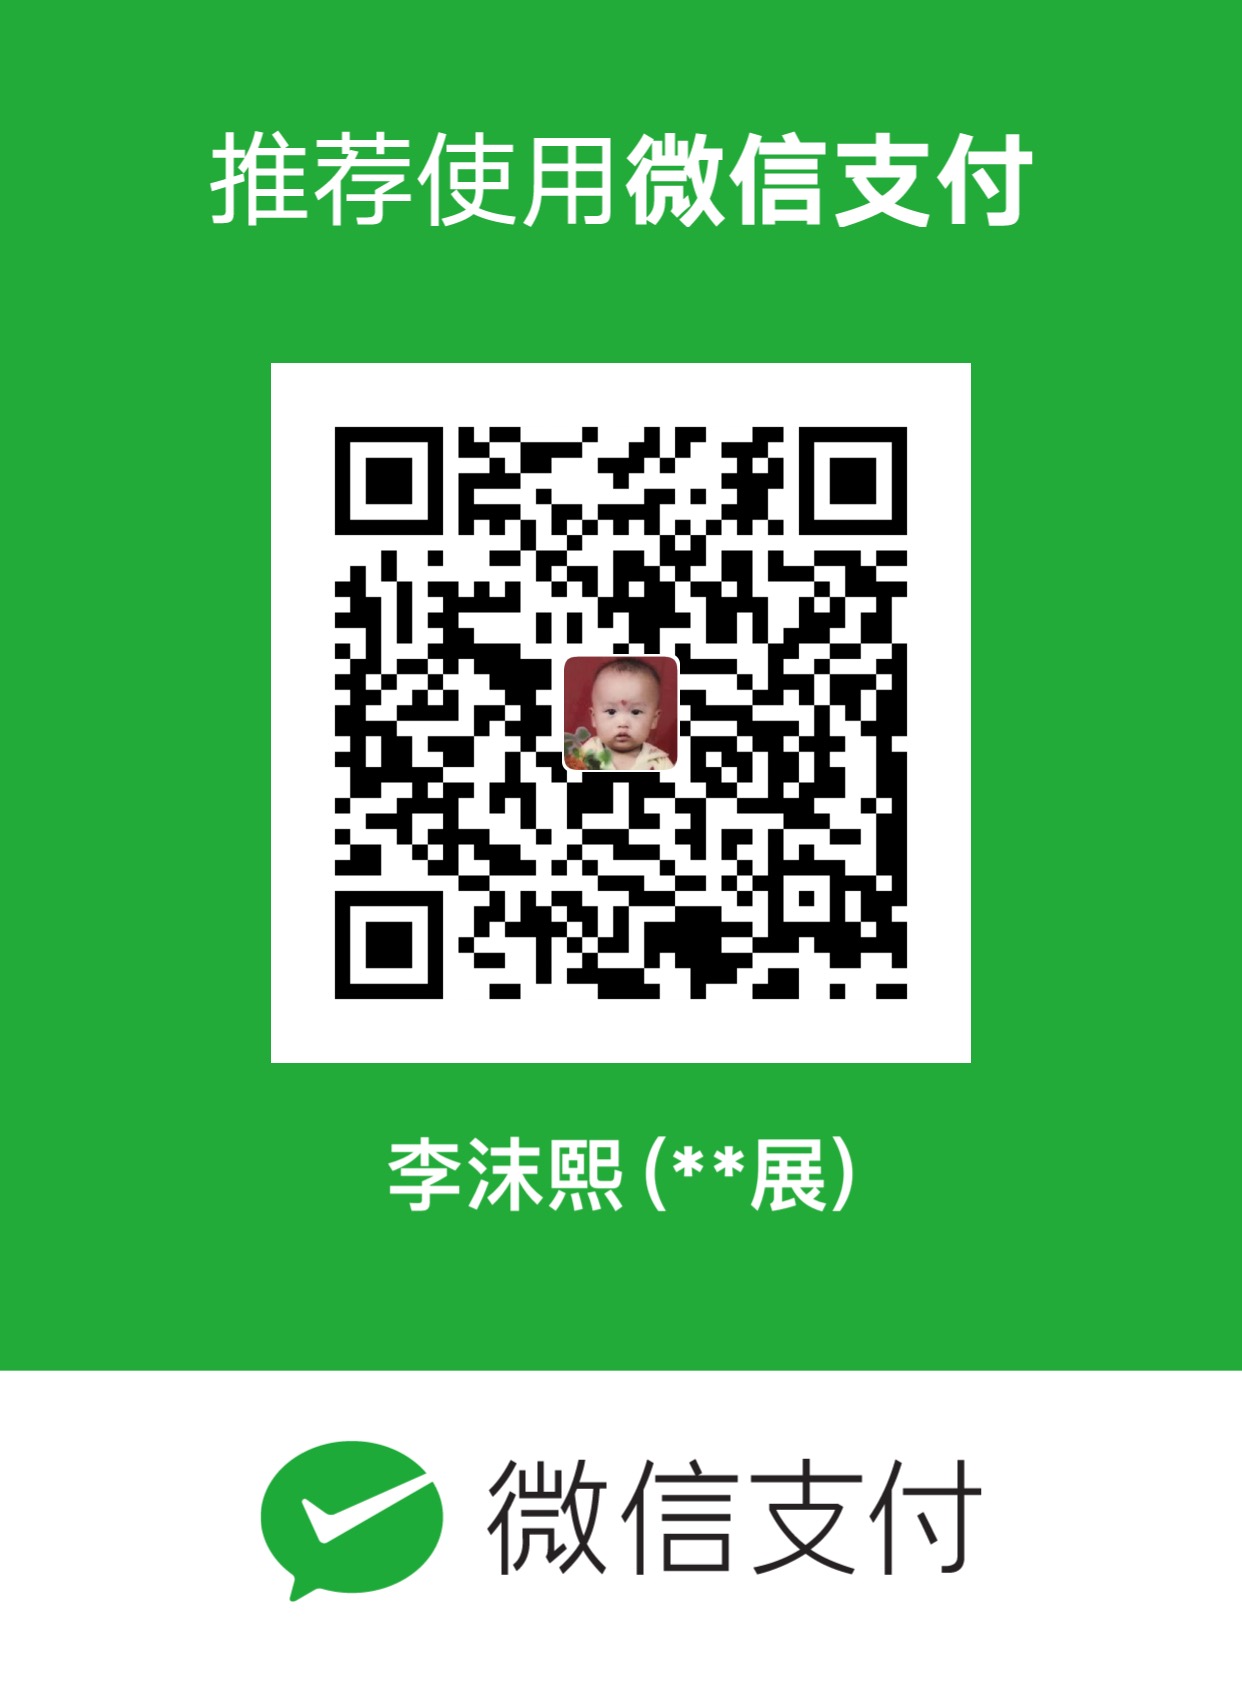 李茂展 WeChat Pay